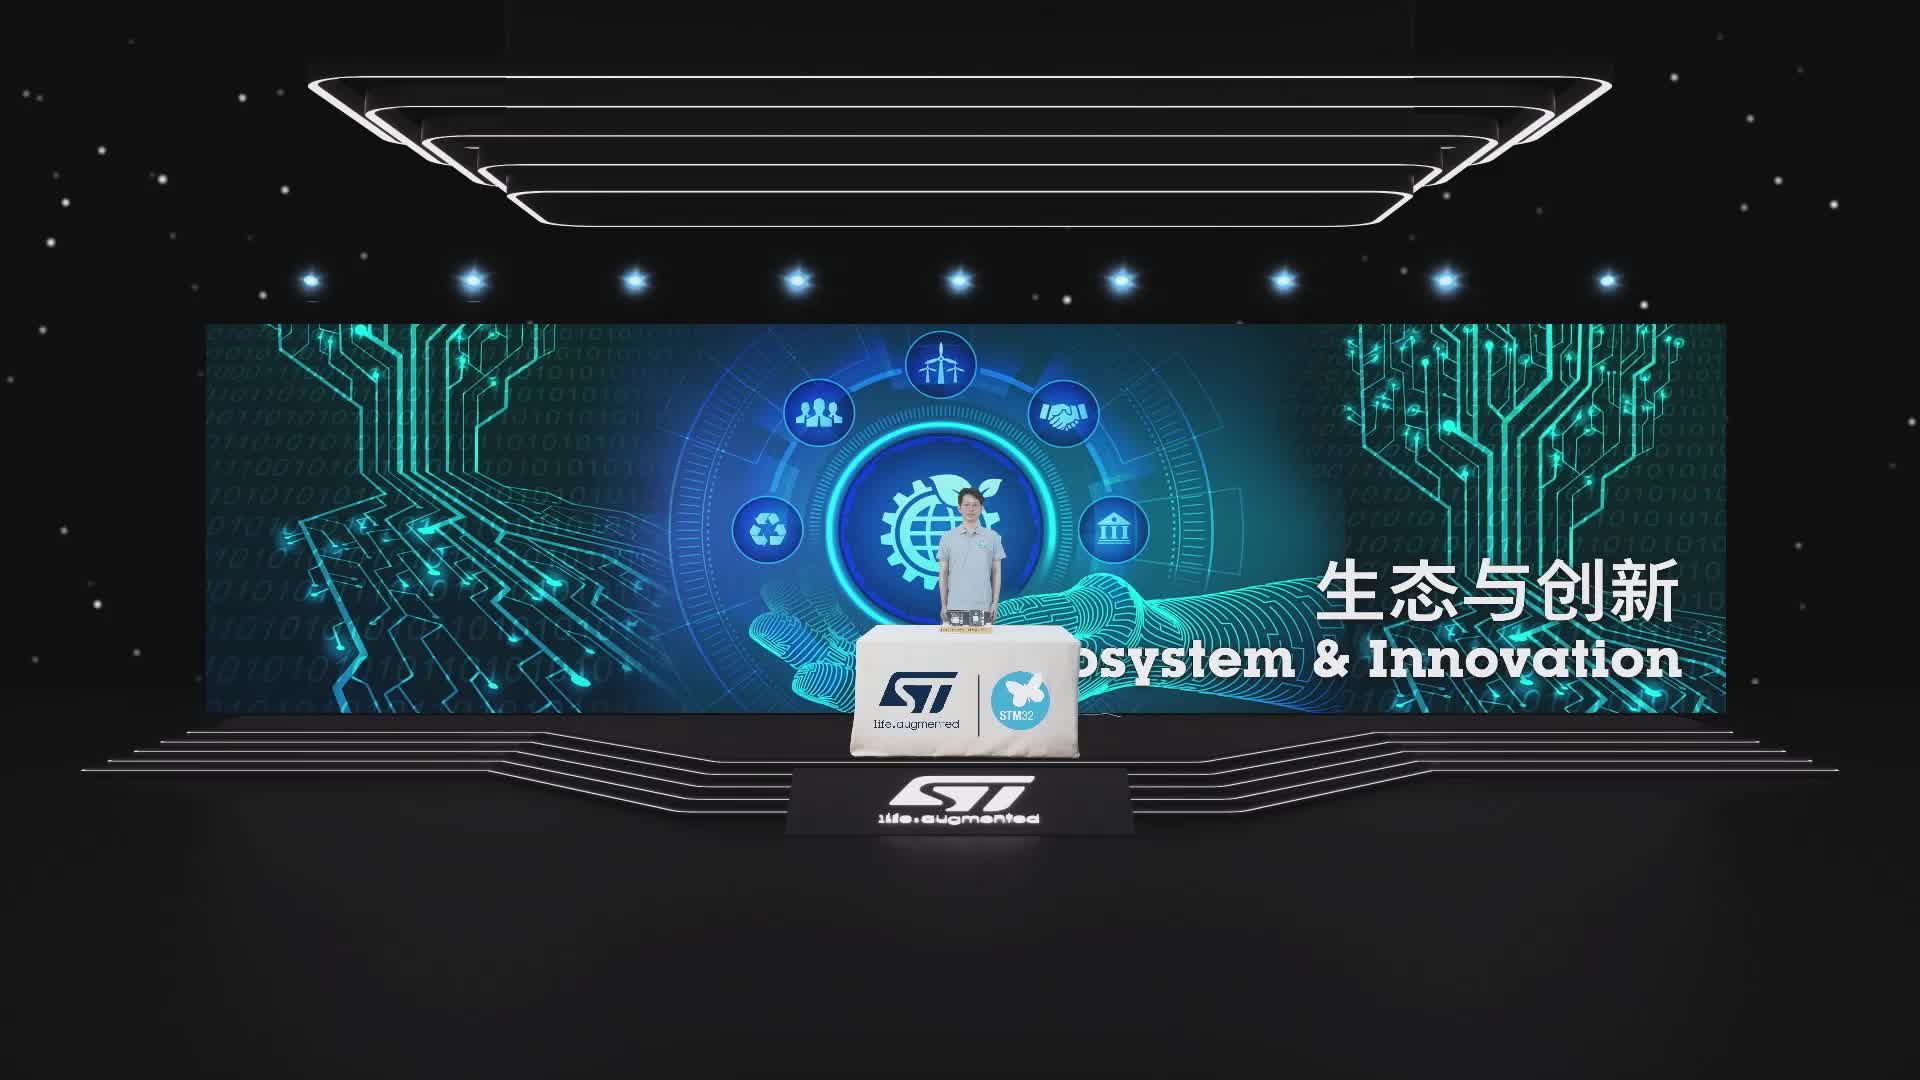 ST線上技術周，展示基于STM32MP157、STM32MP151系列處理器開發的核心板及開發板